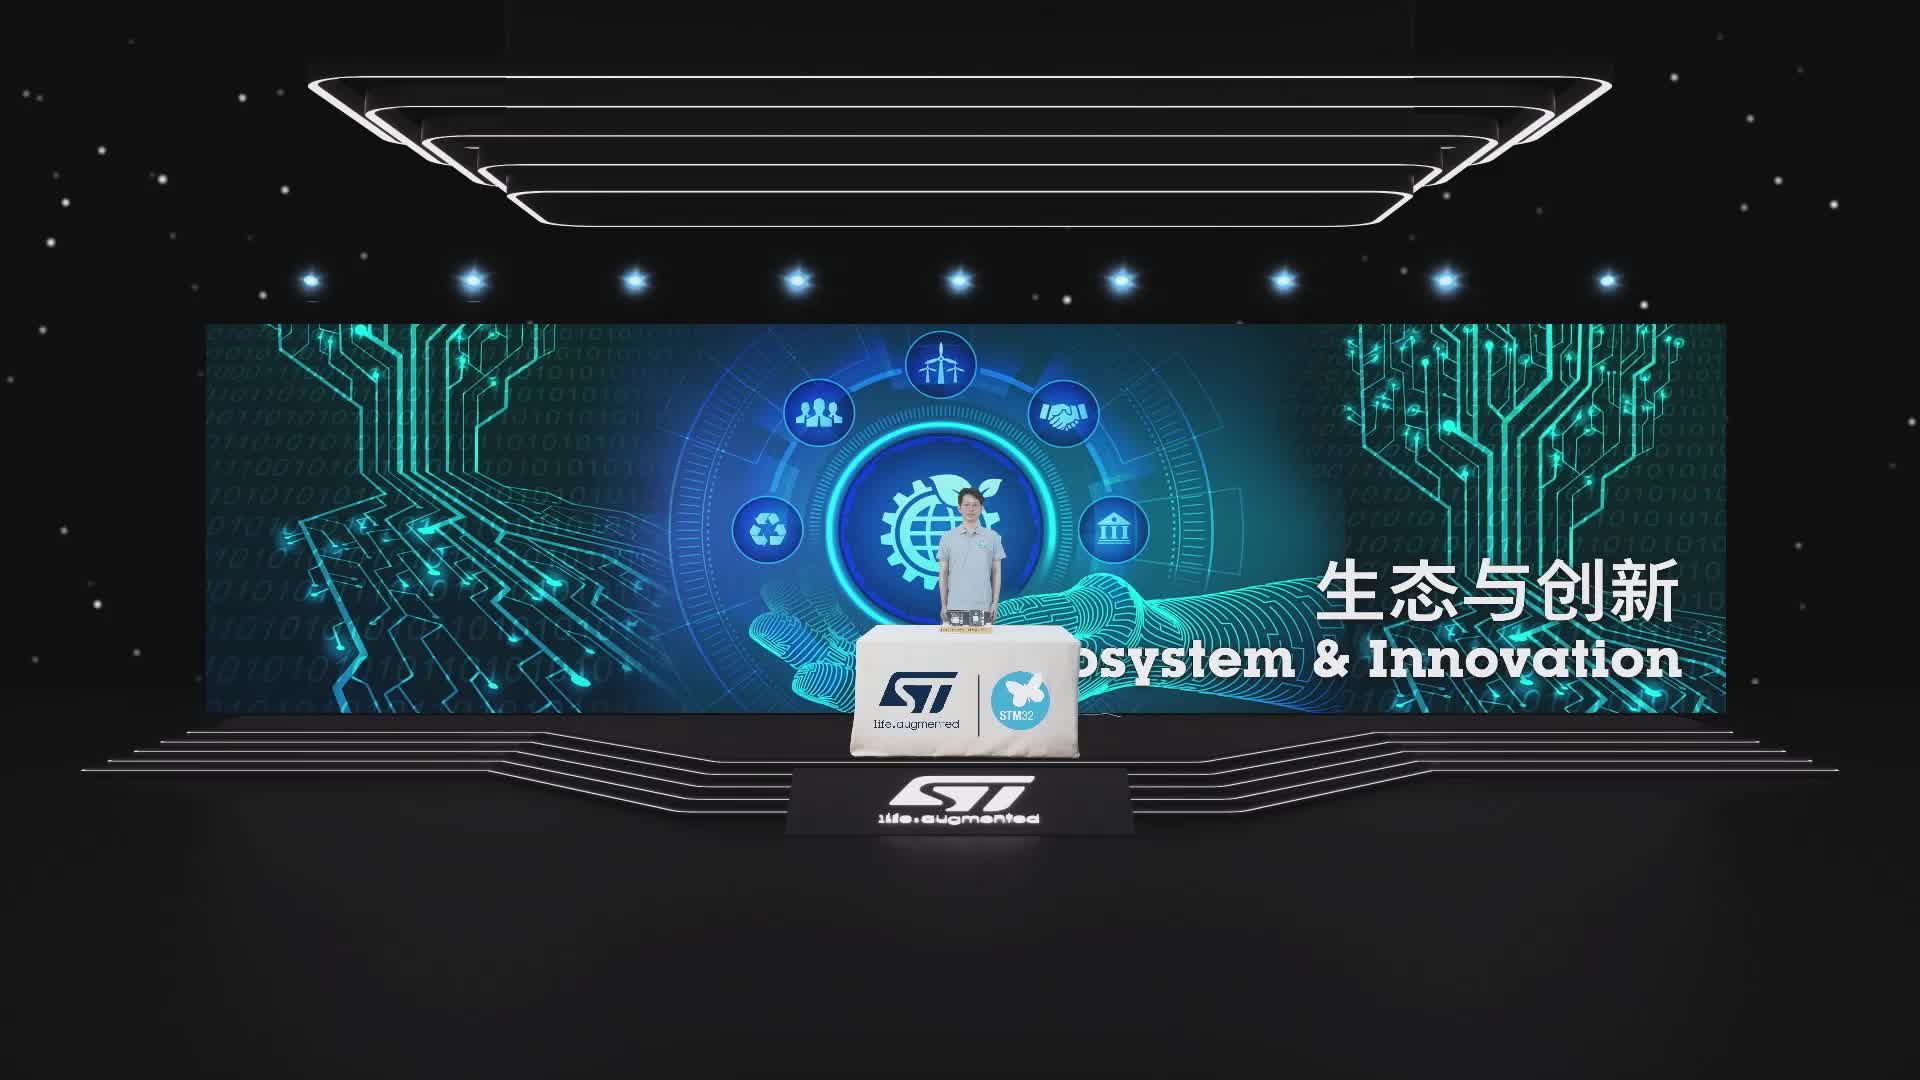 ST線上技術周，展示基于STM32MP157、STM32MP151系列處理器開發的核心板及開發板